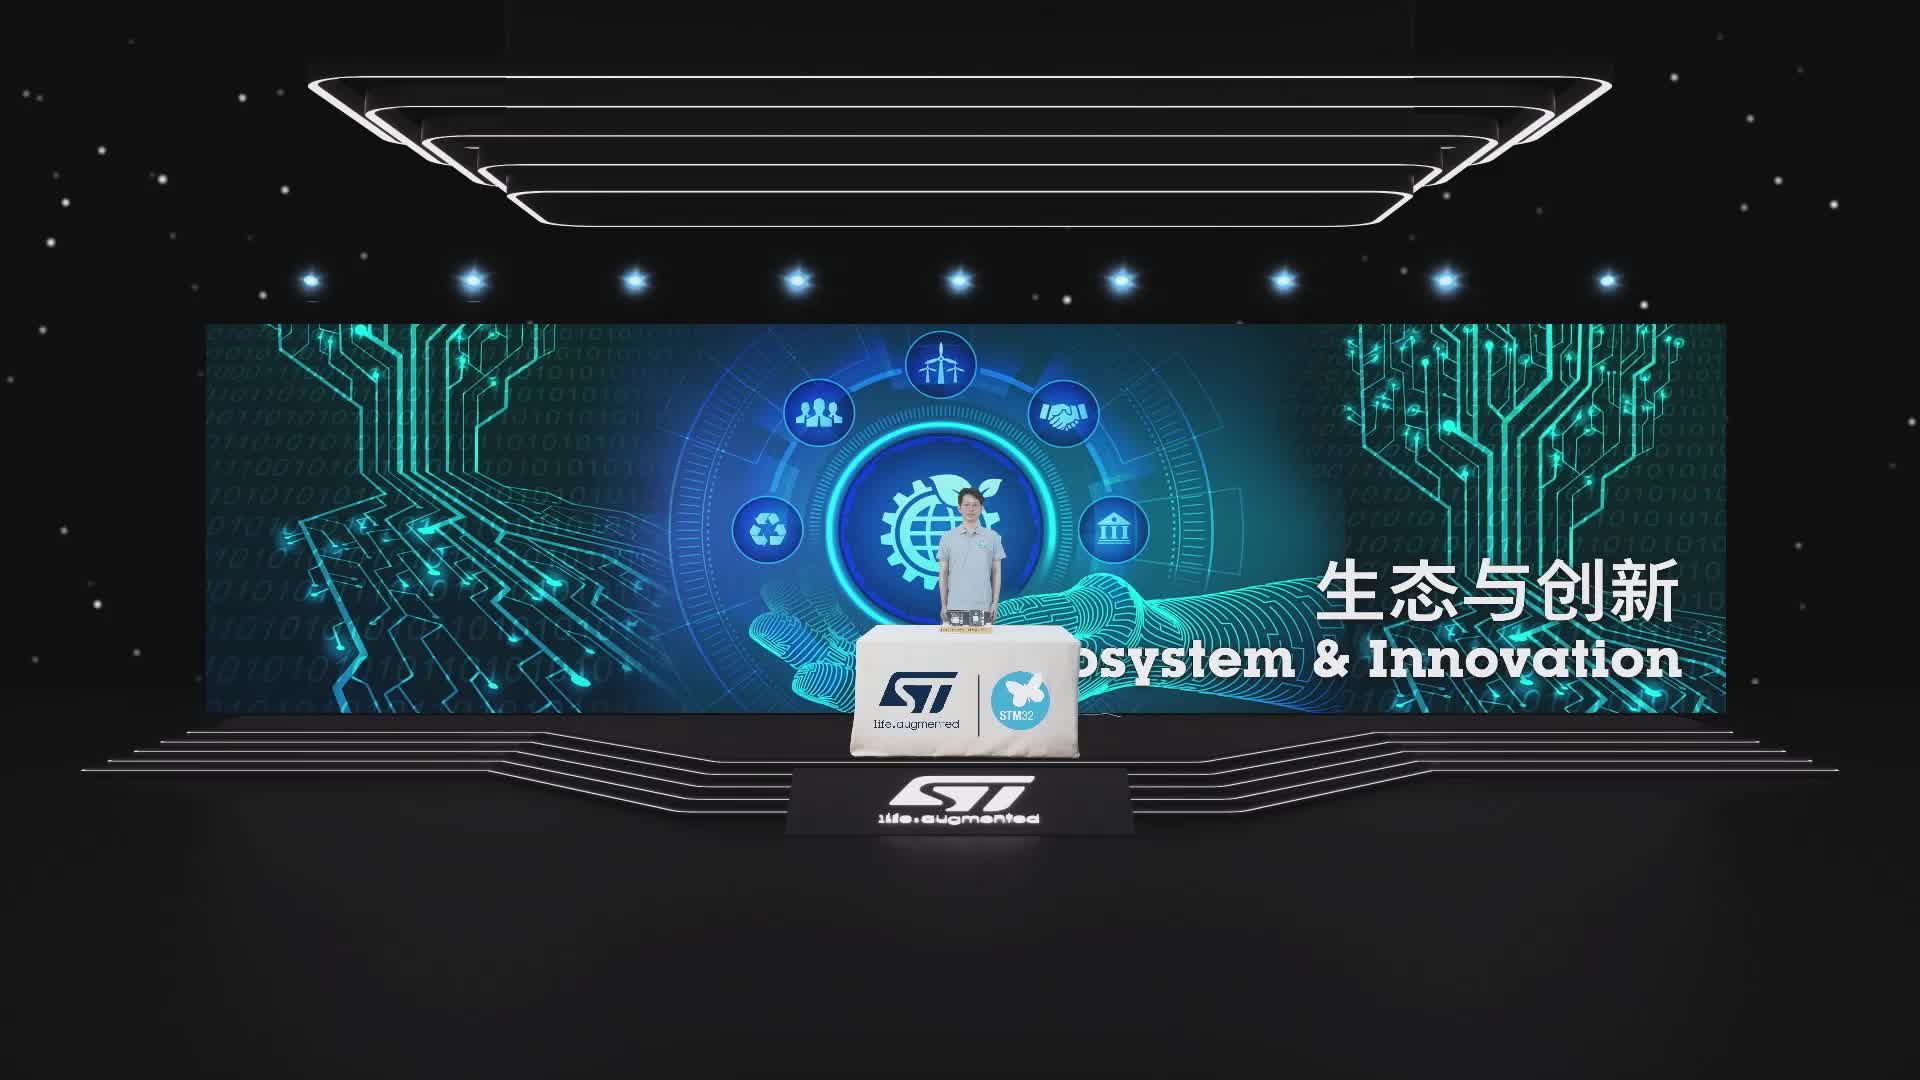 ST線上技術周，展示基于STM32MP157、STM32MP151系列處理器開發的核心板及開發板